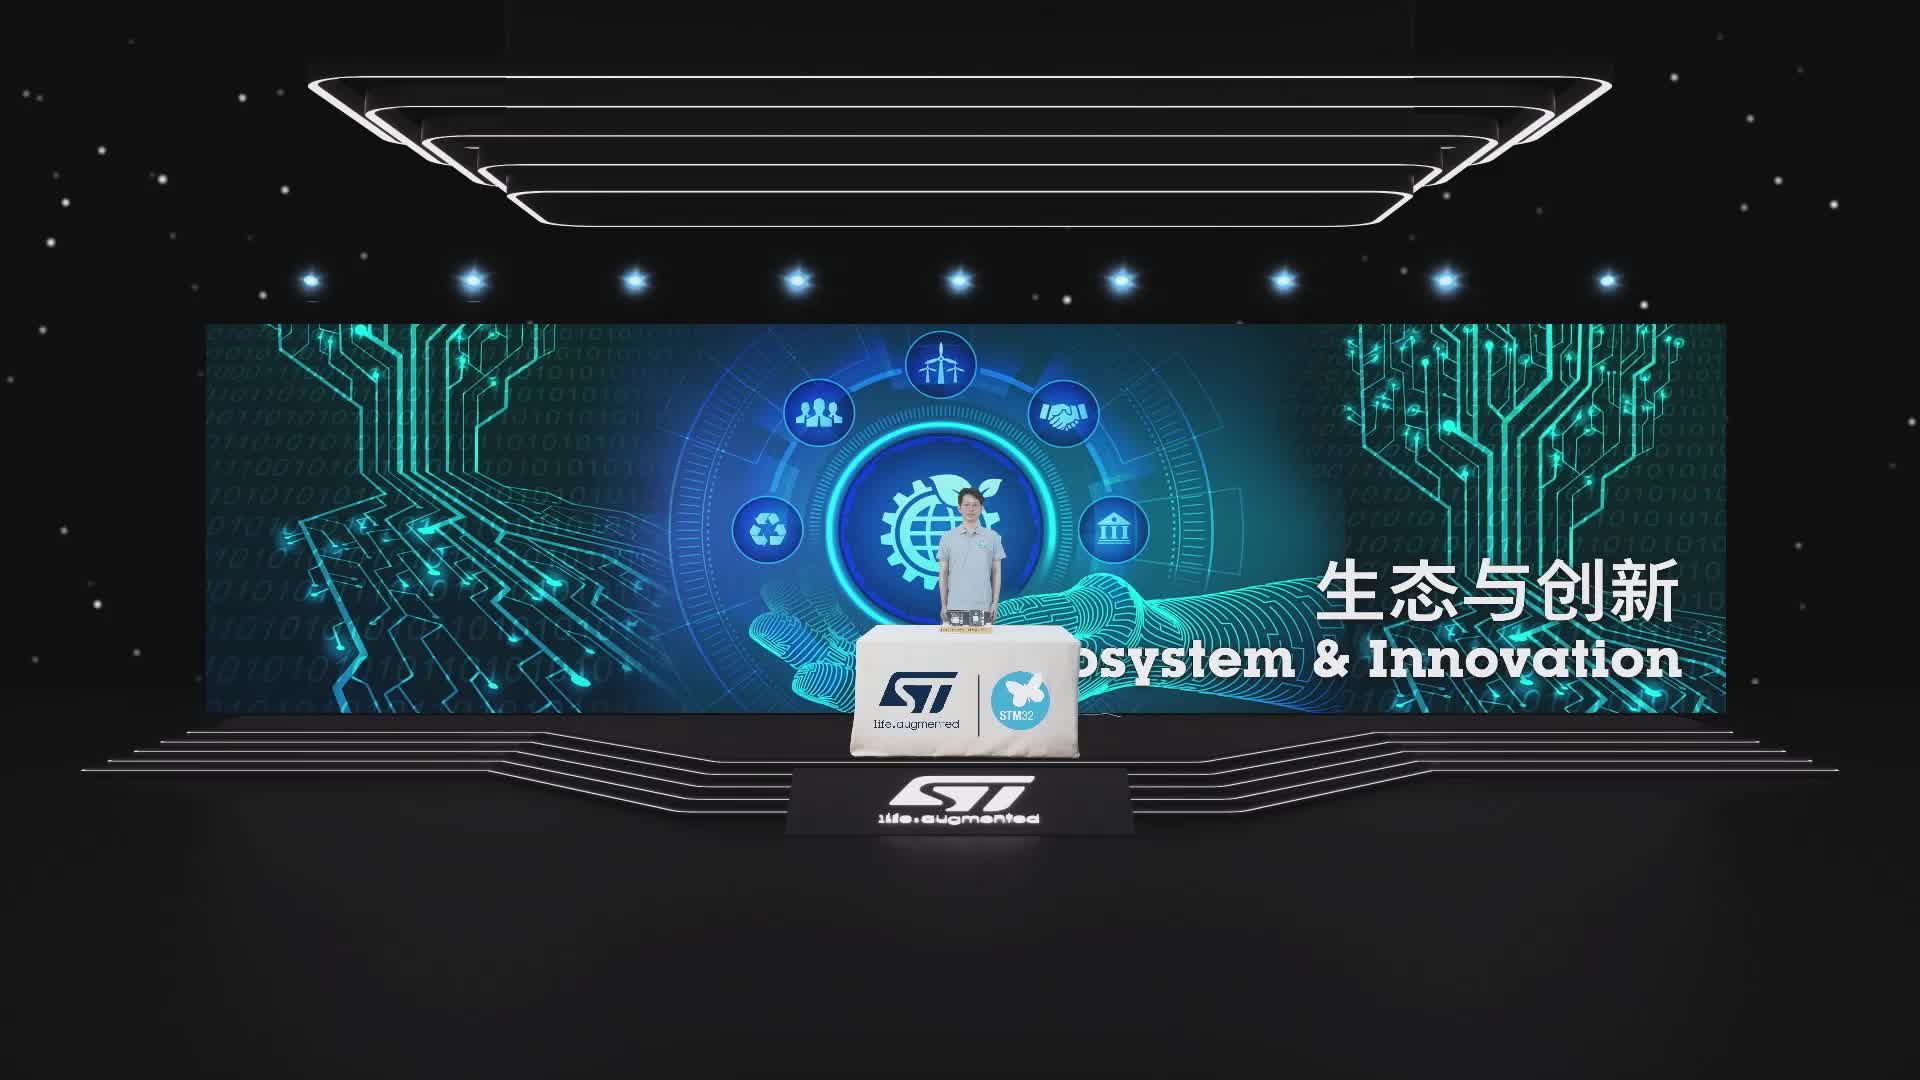 ST線上技術周，展示基于STM32MP157、STM32MP151系列處理器開發的核心板及開發板